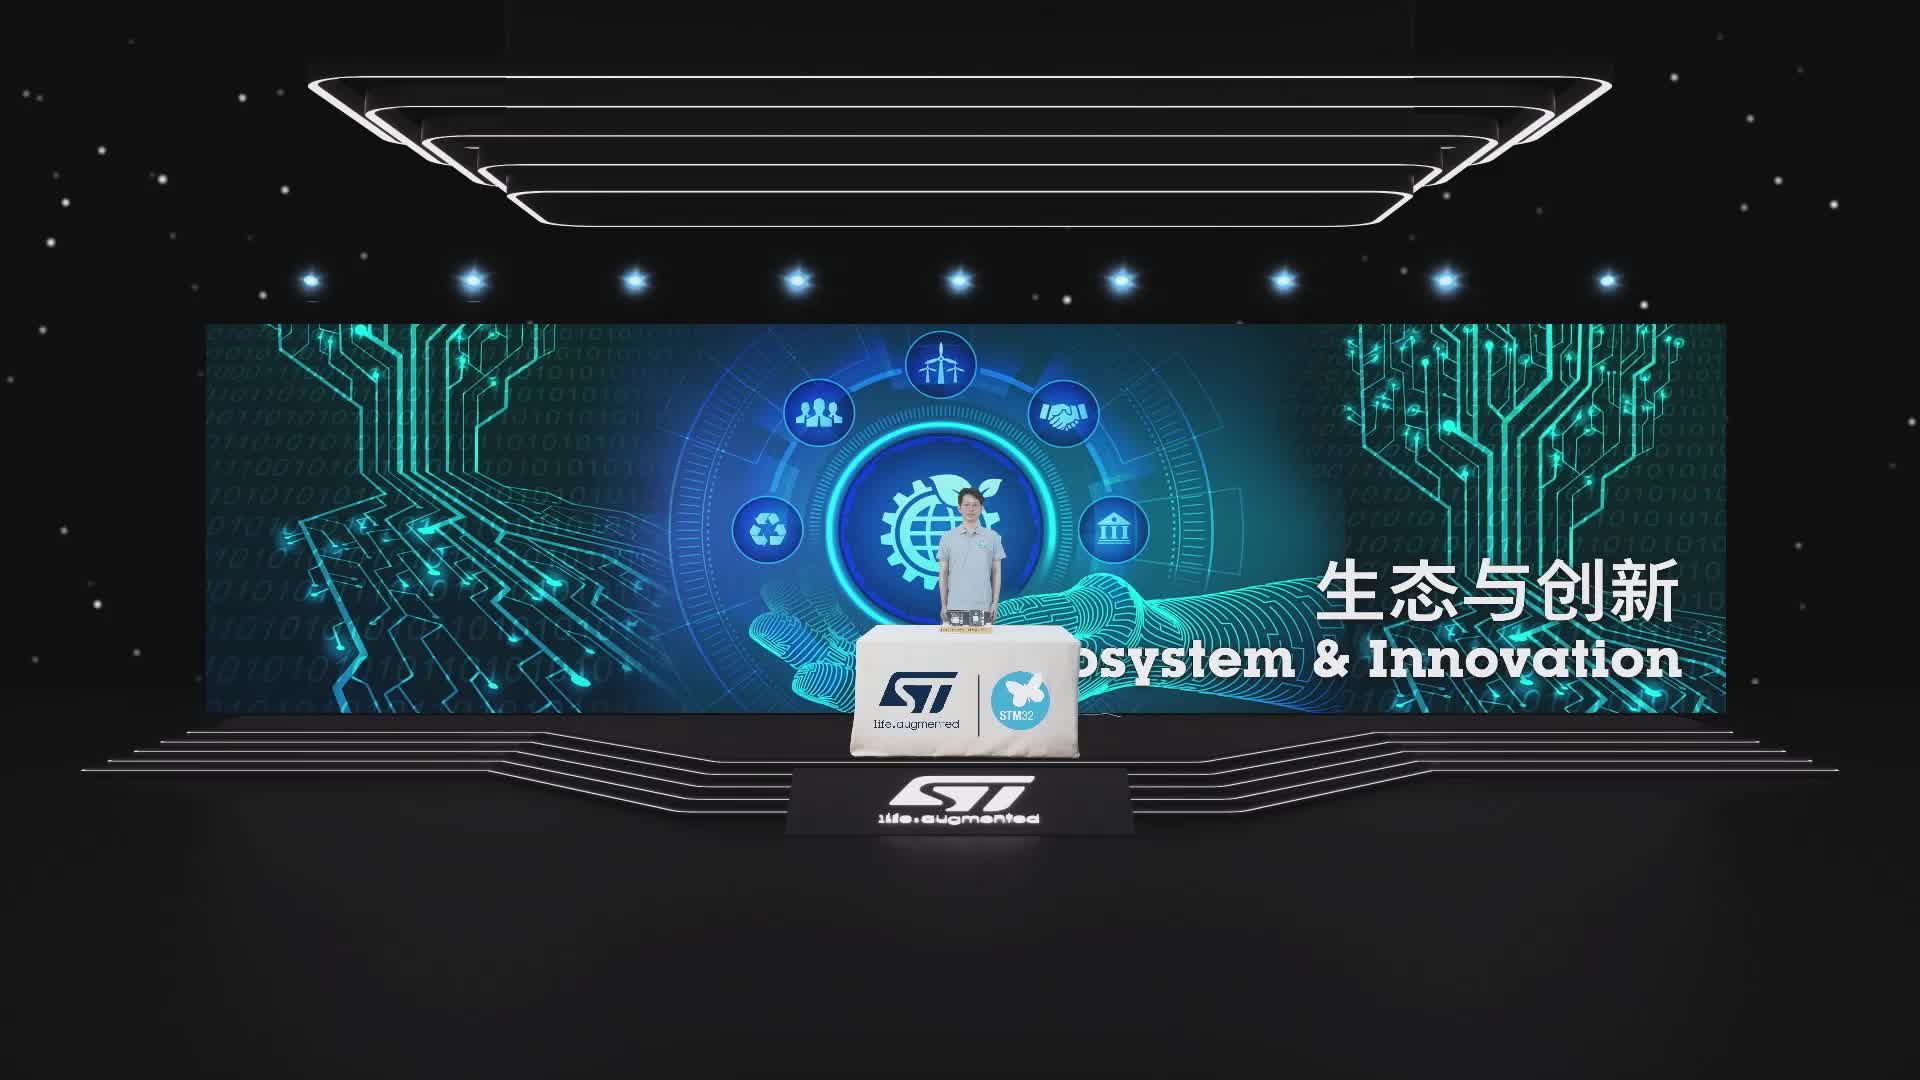 ST線上技術周，展示基于STM32MP157、STM32MP151系列處理器開發的核心板及開發板